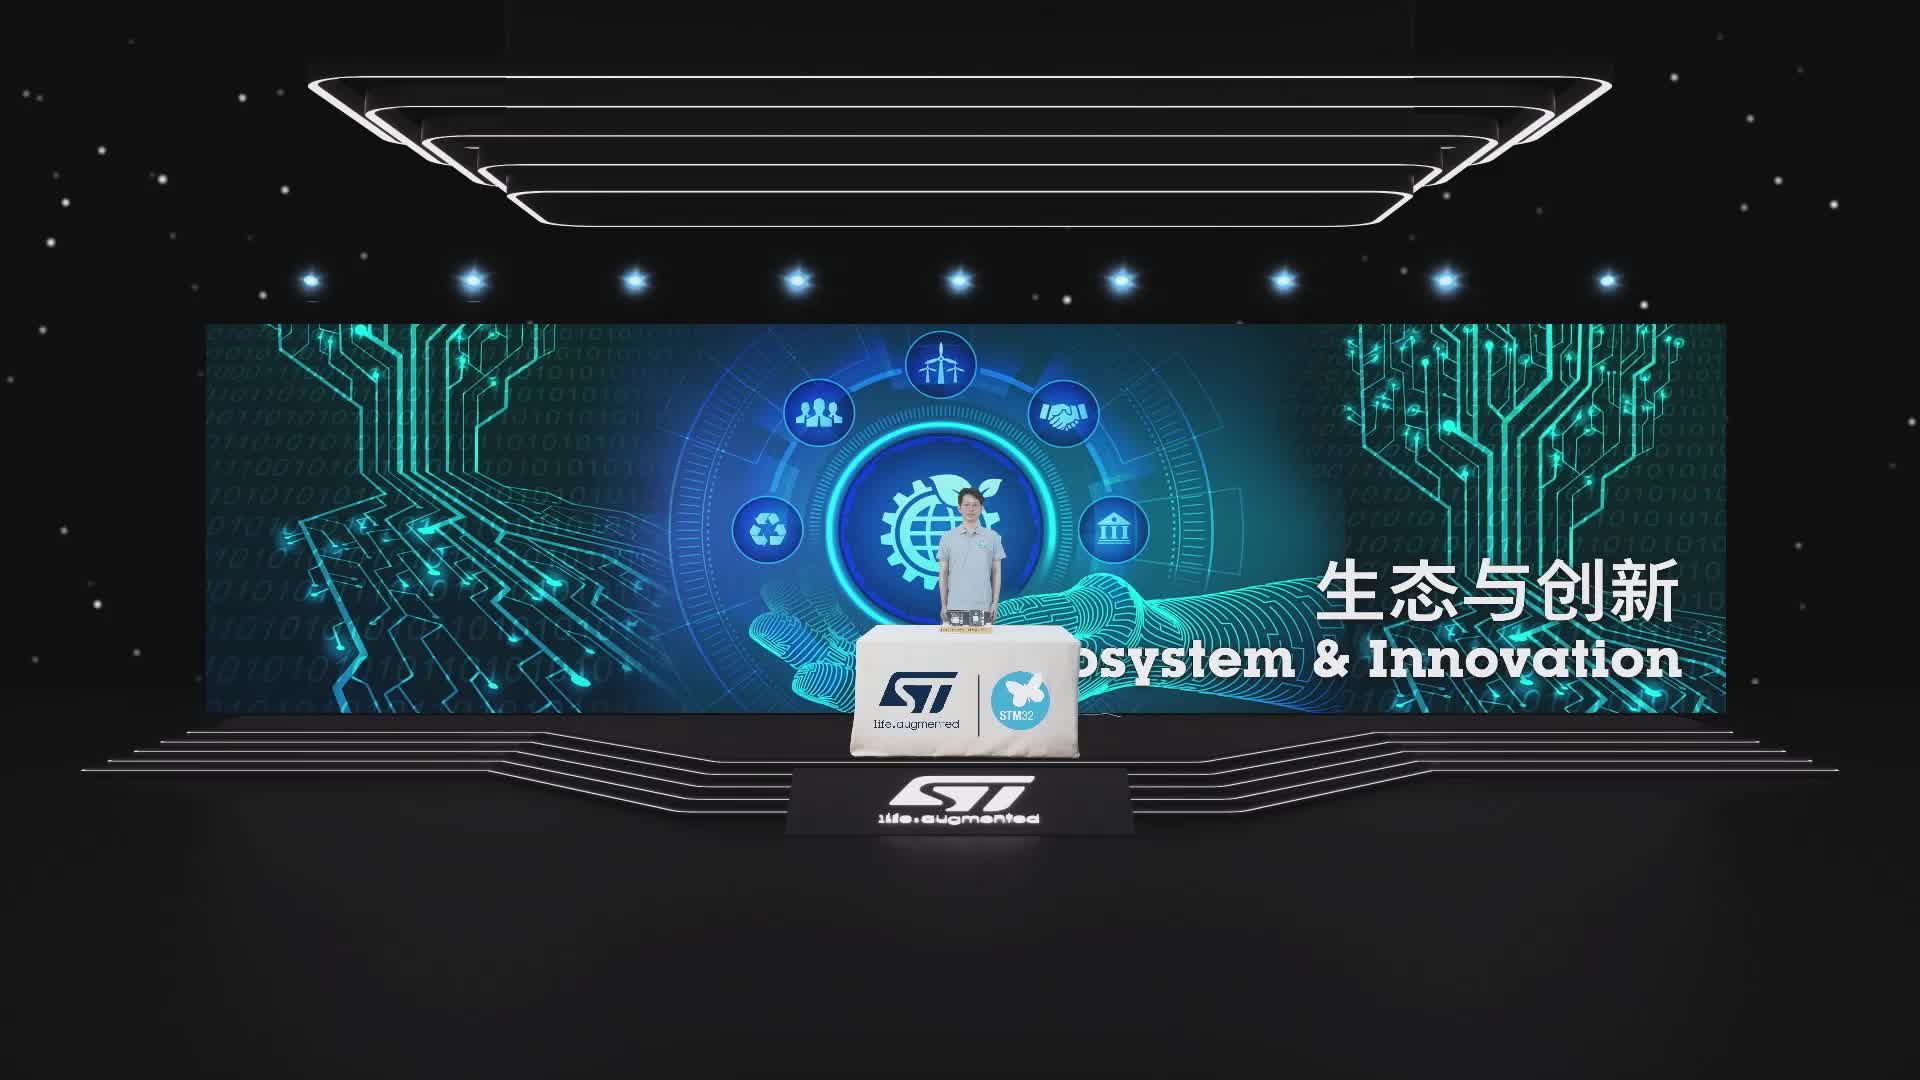 ST線上技術周，展示基于STM32MP157、STM32MP151系列處理器開發的核心板及開發板